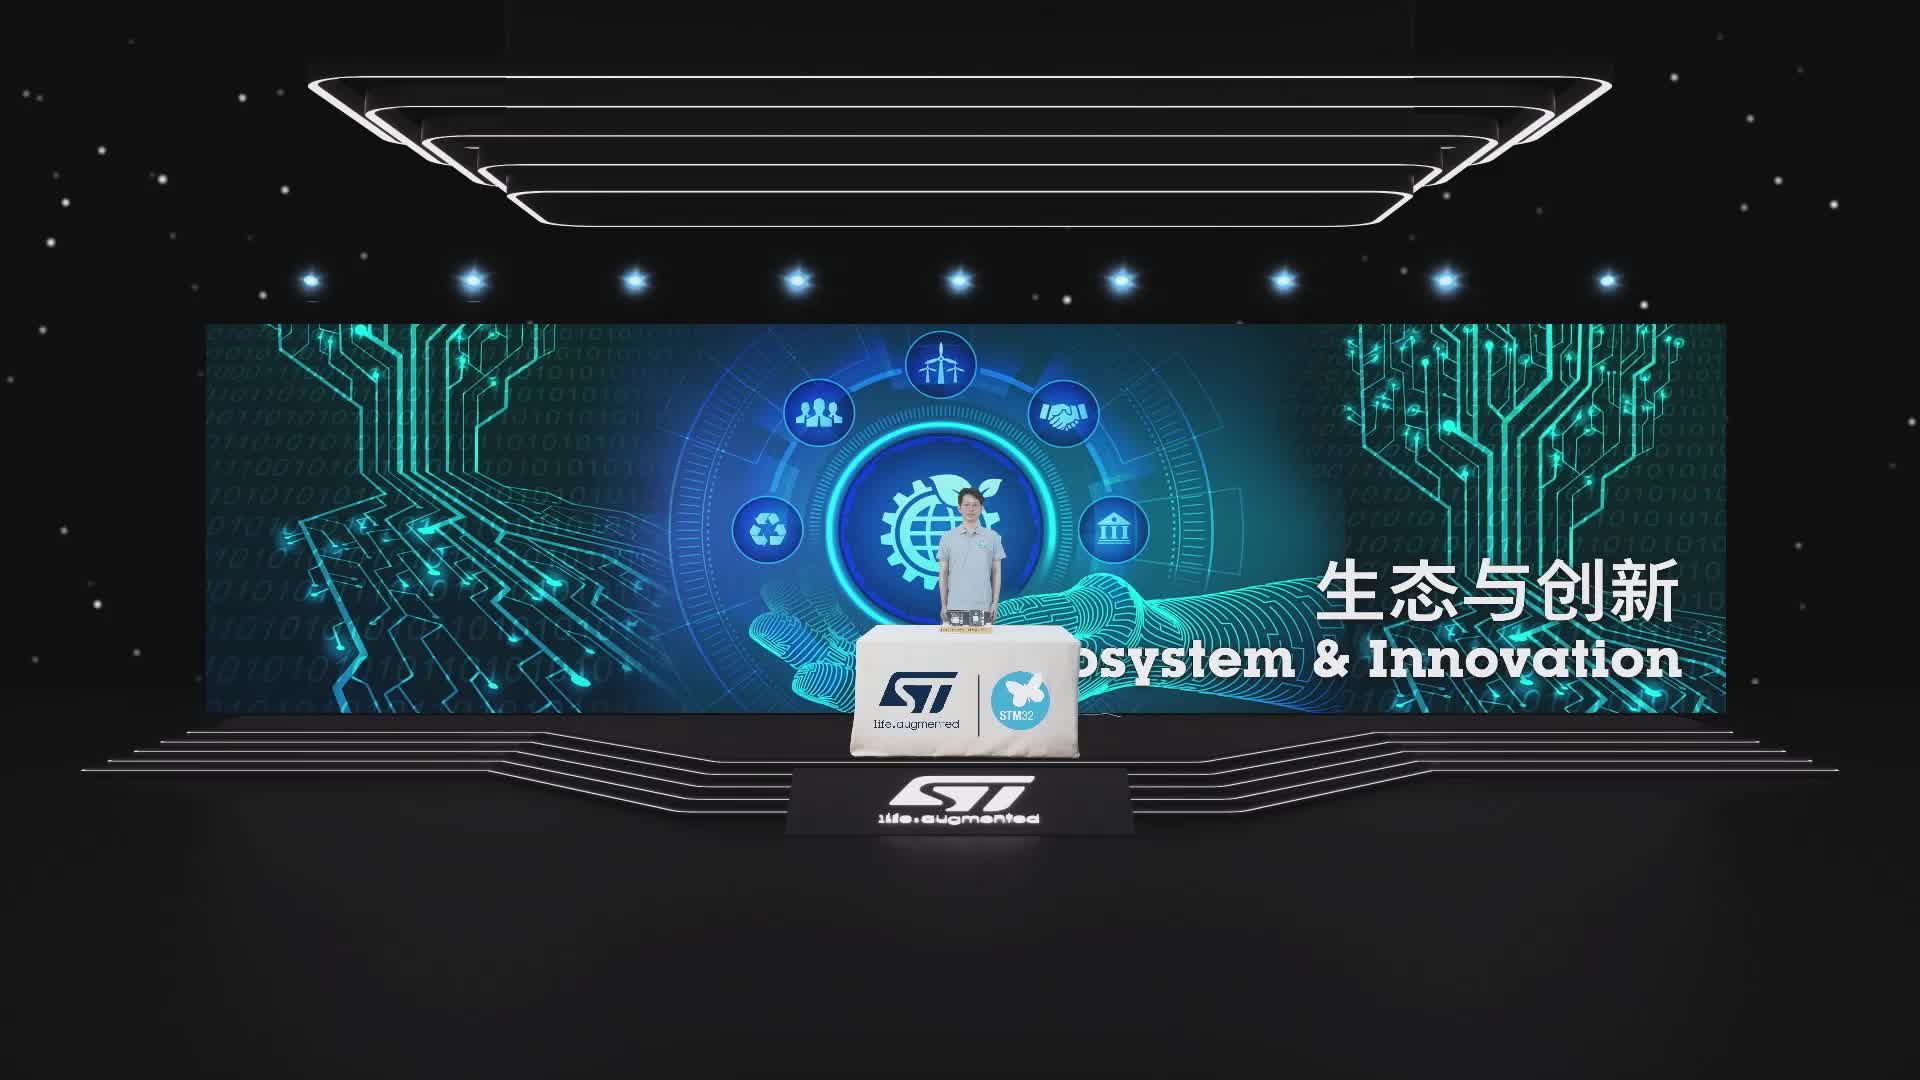 ST線上技術周，展示基于STM32MP157、STM32MP151系列處理器開發的核心板及開發板